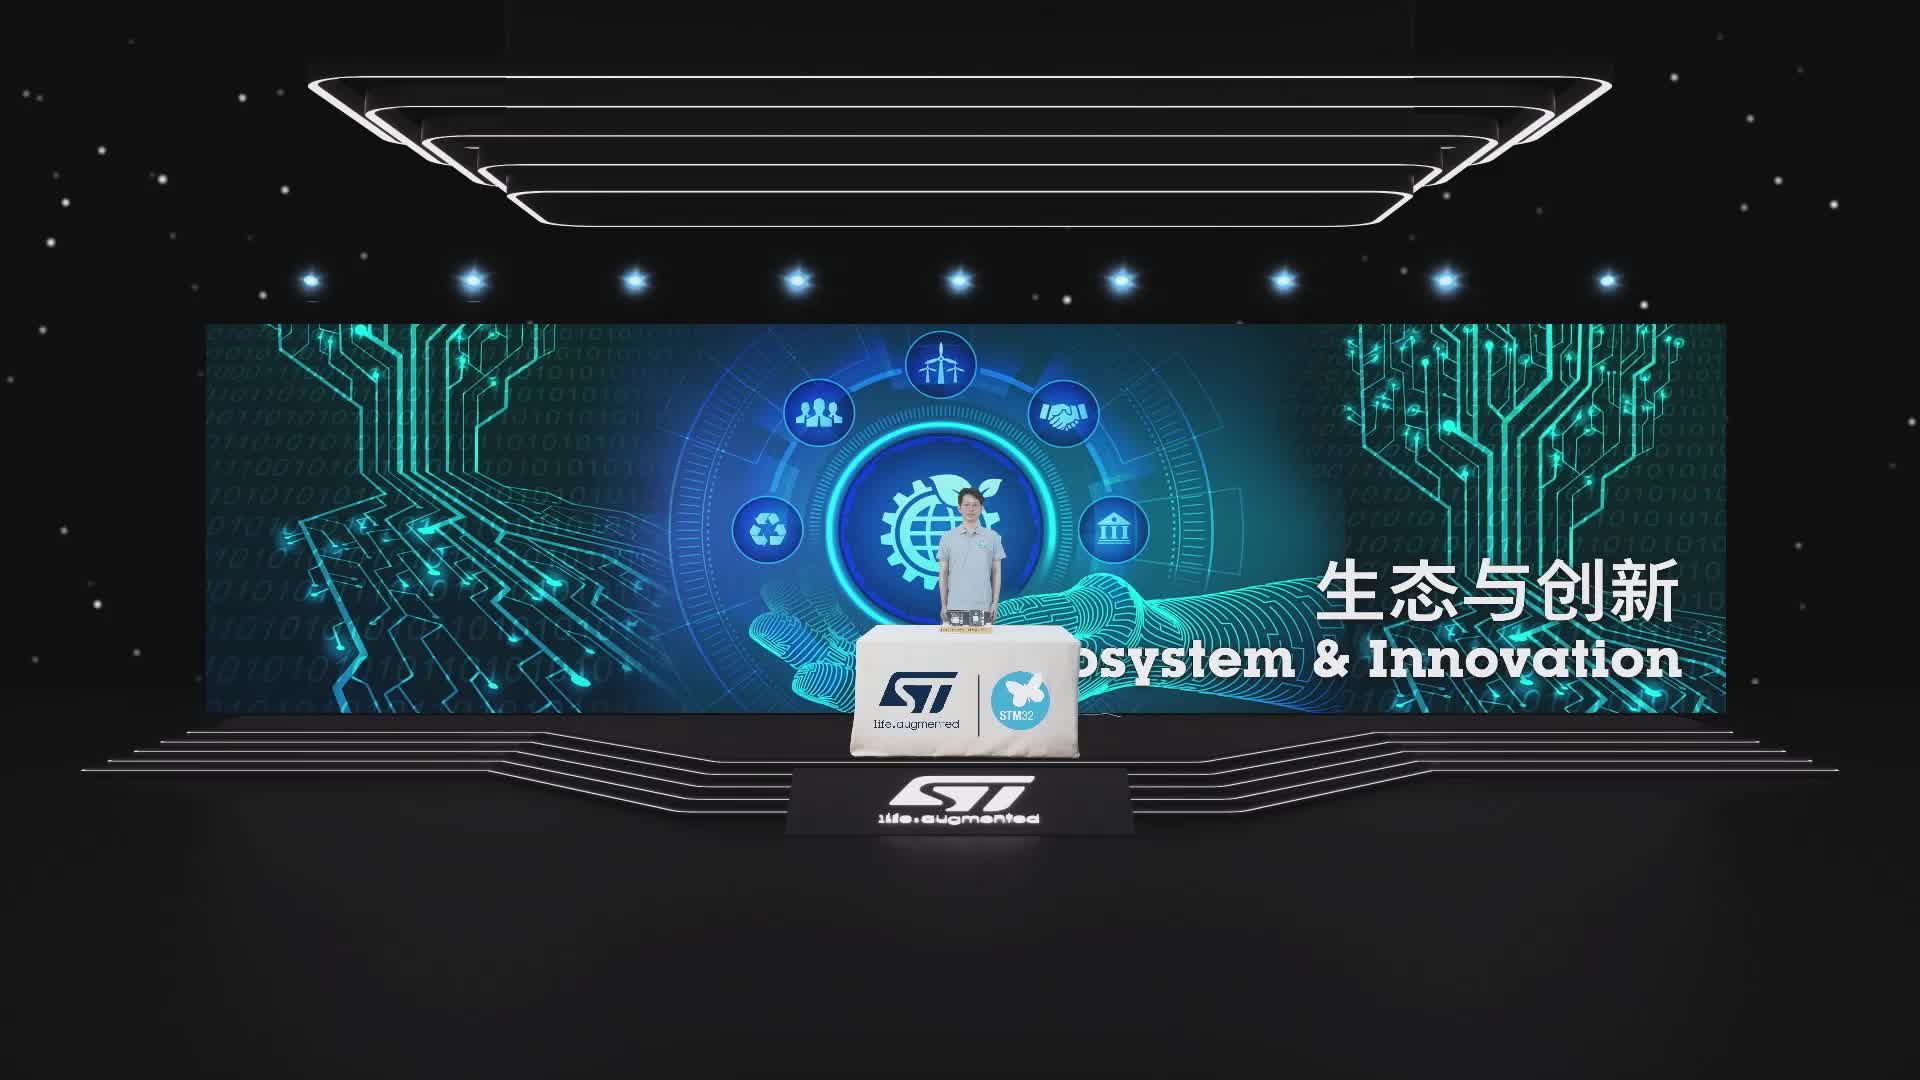 ST線上技術周，展示基于STM32MP157、STM32MP151系列處理器開發的核心板及開發板